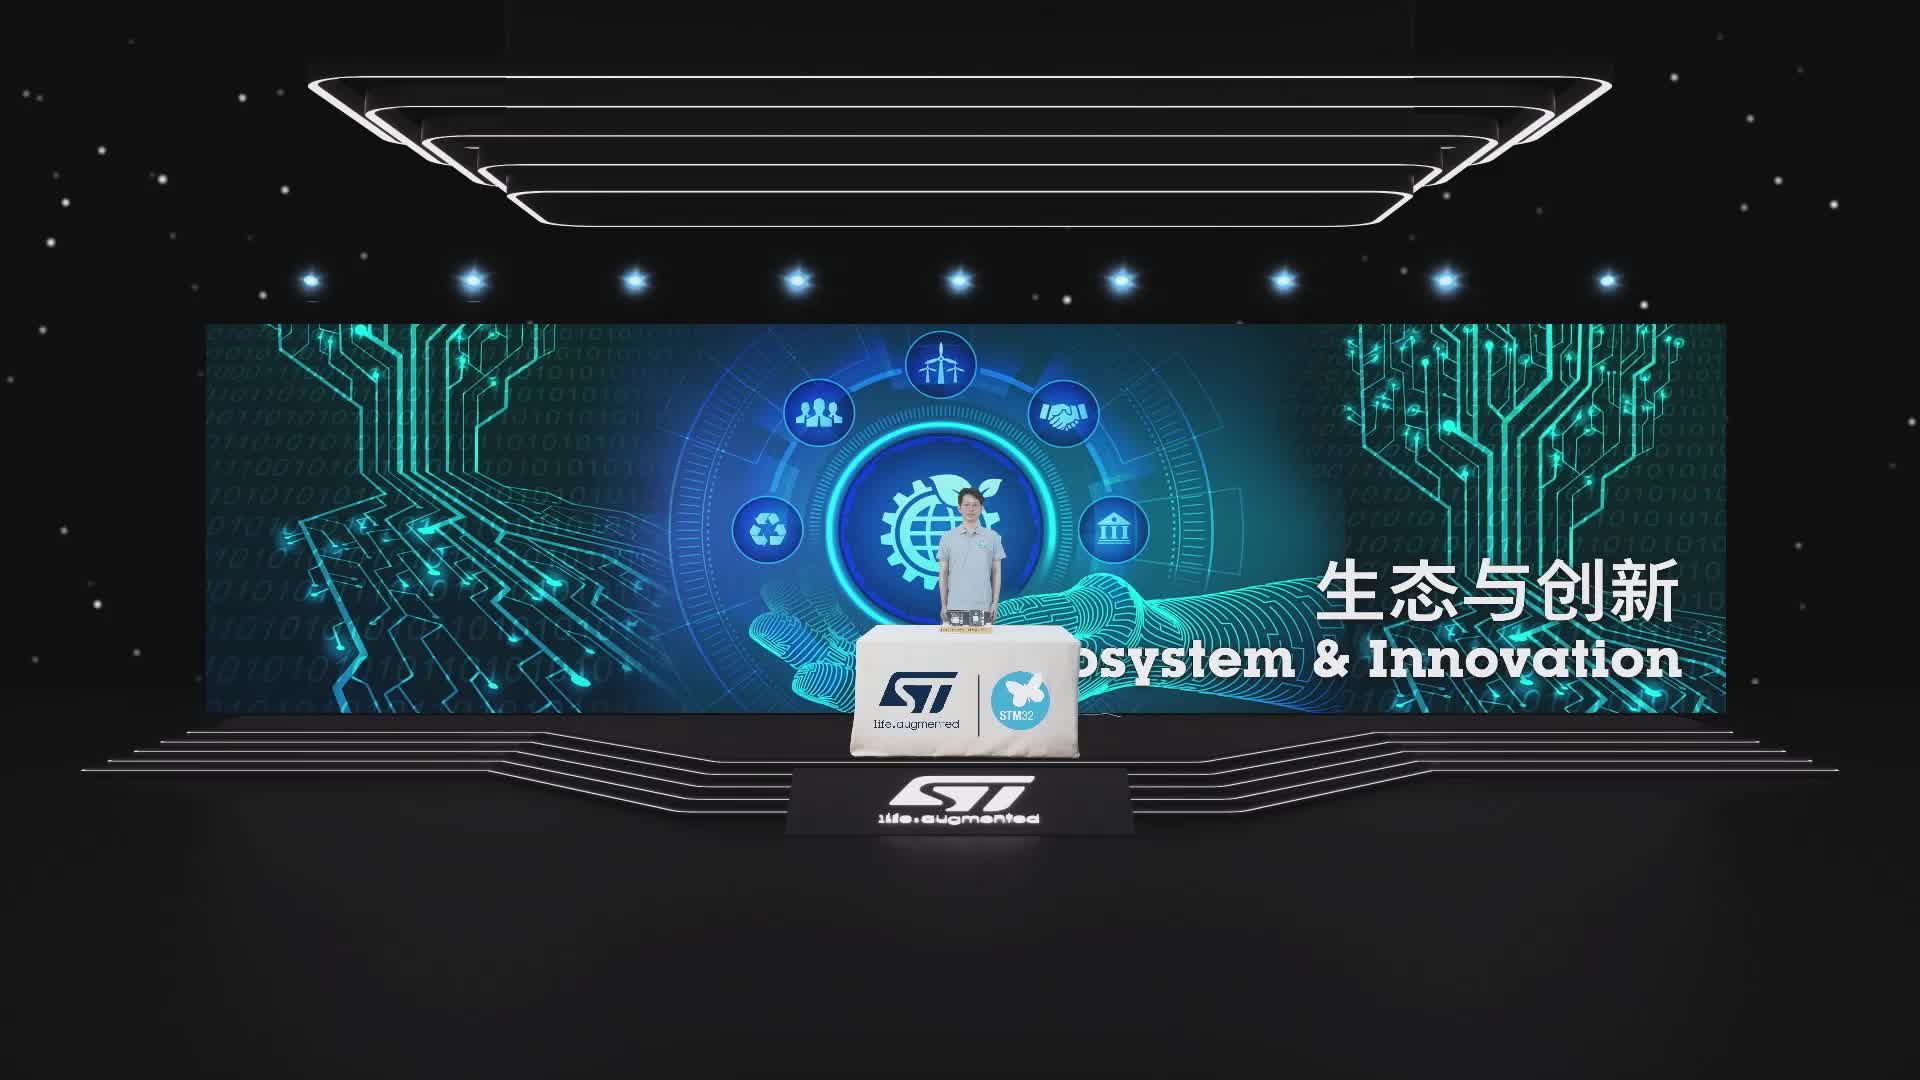 ST線上技術周，展示基于STM32MP157、STM32MP151系列處理器開發的核心板及開發板